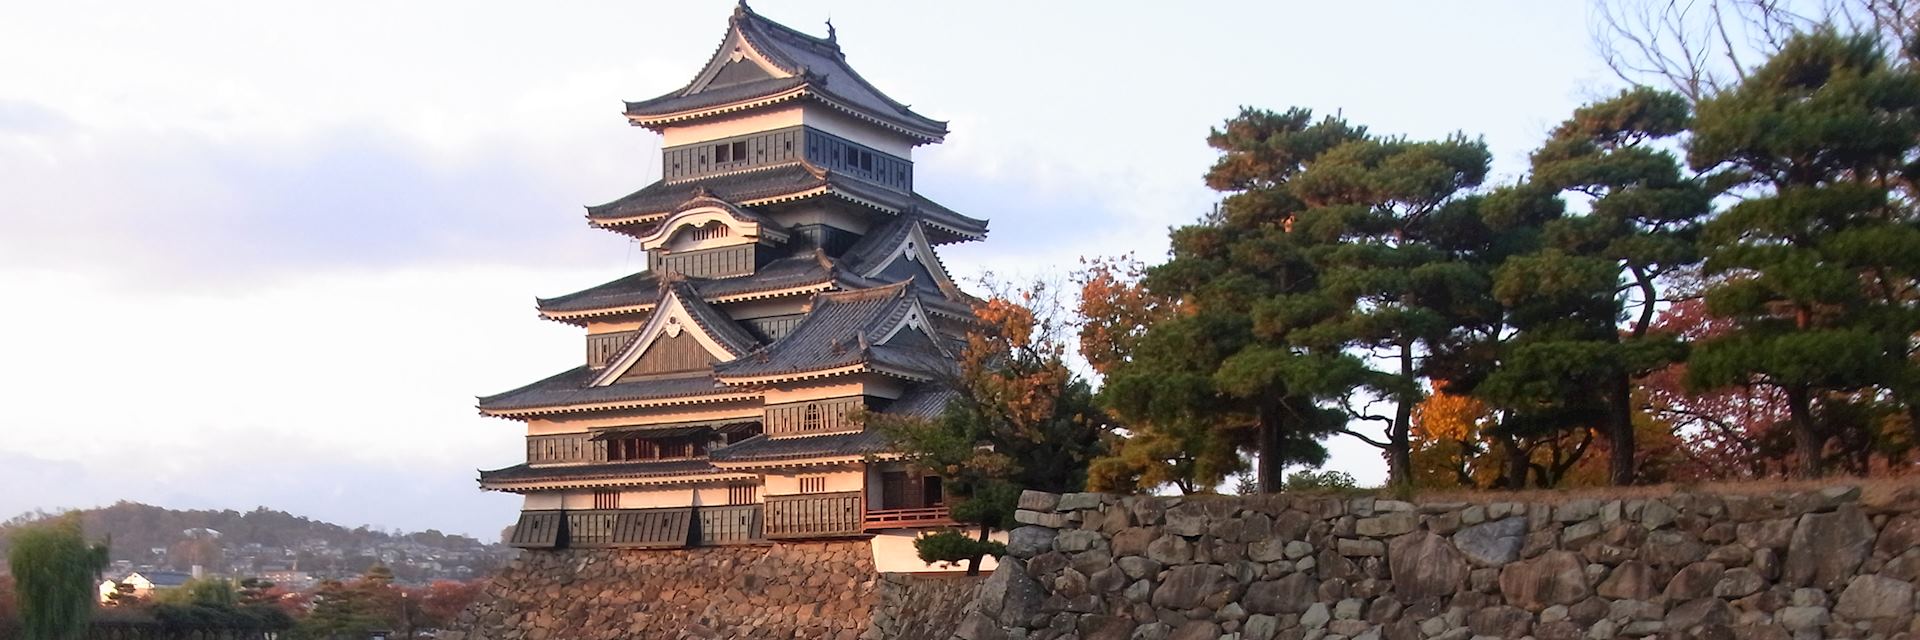 Matsumoto Castle in autumn